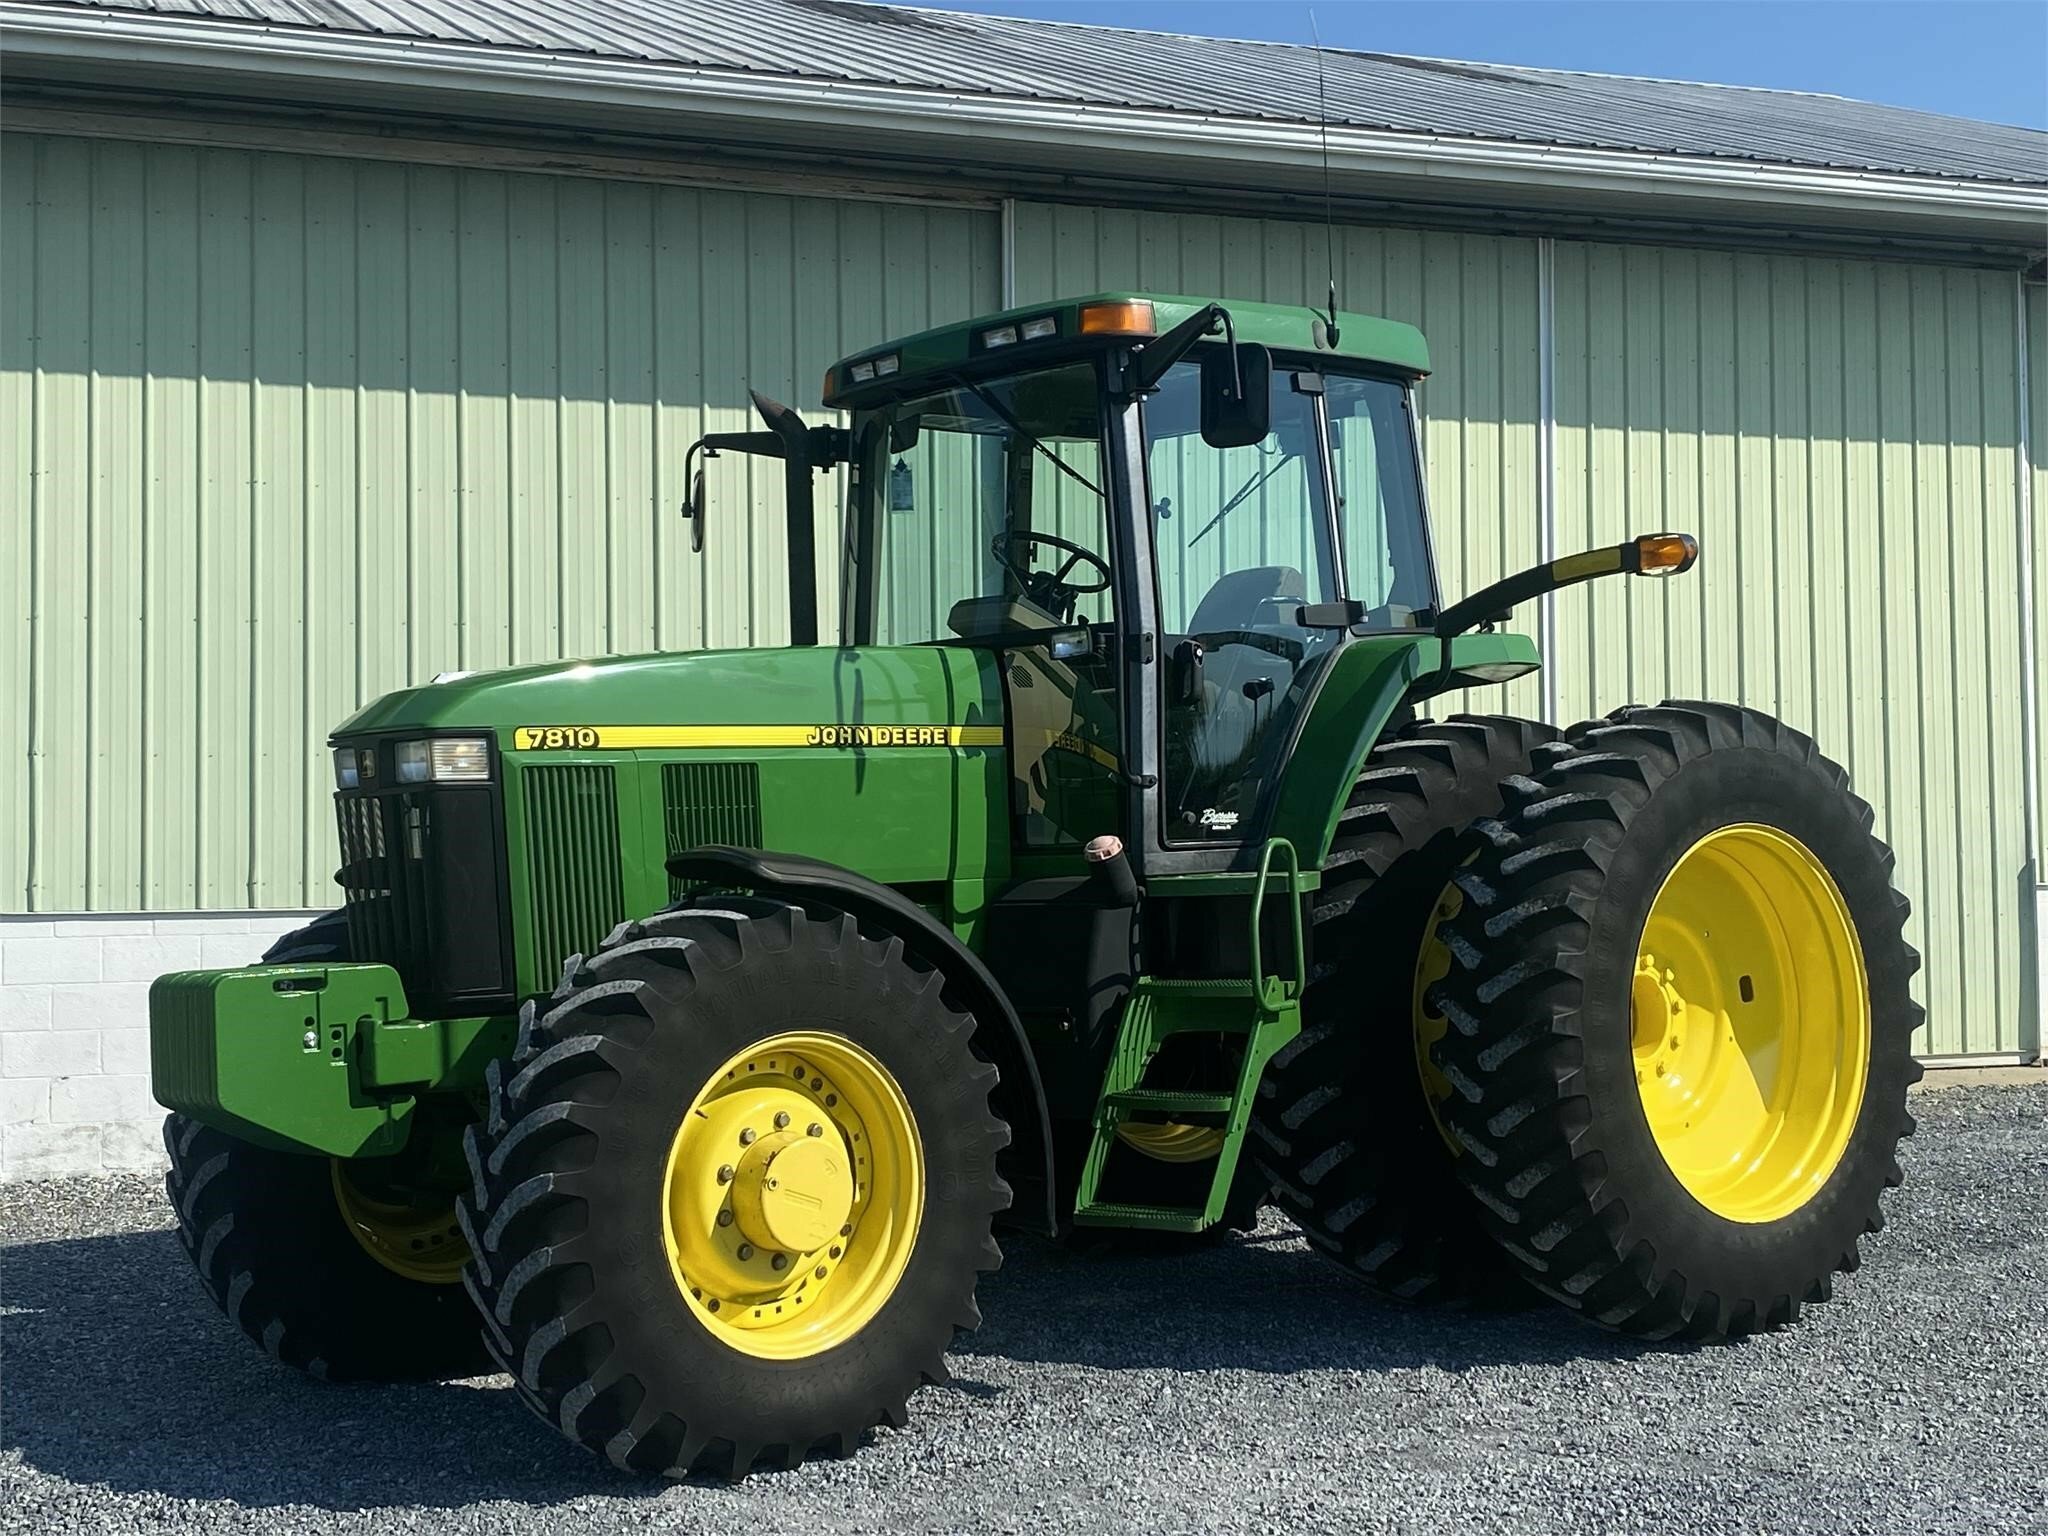 John Deere 7810 Tractor - $Call